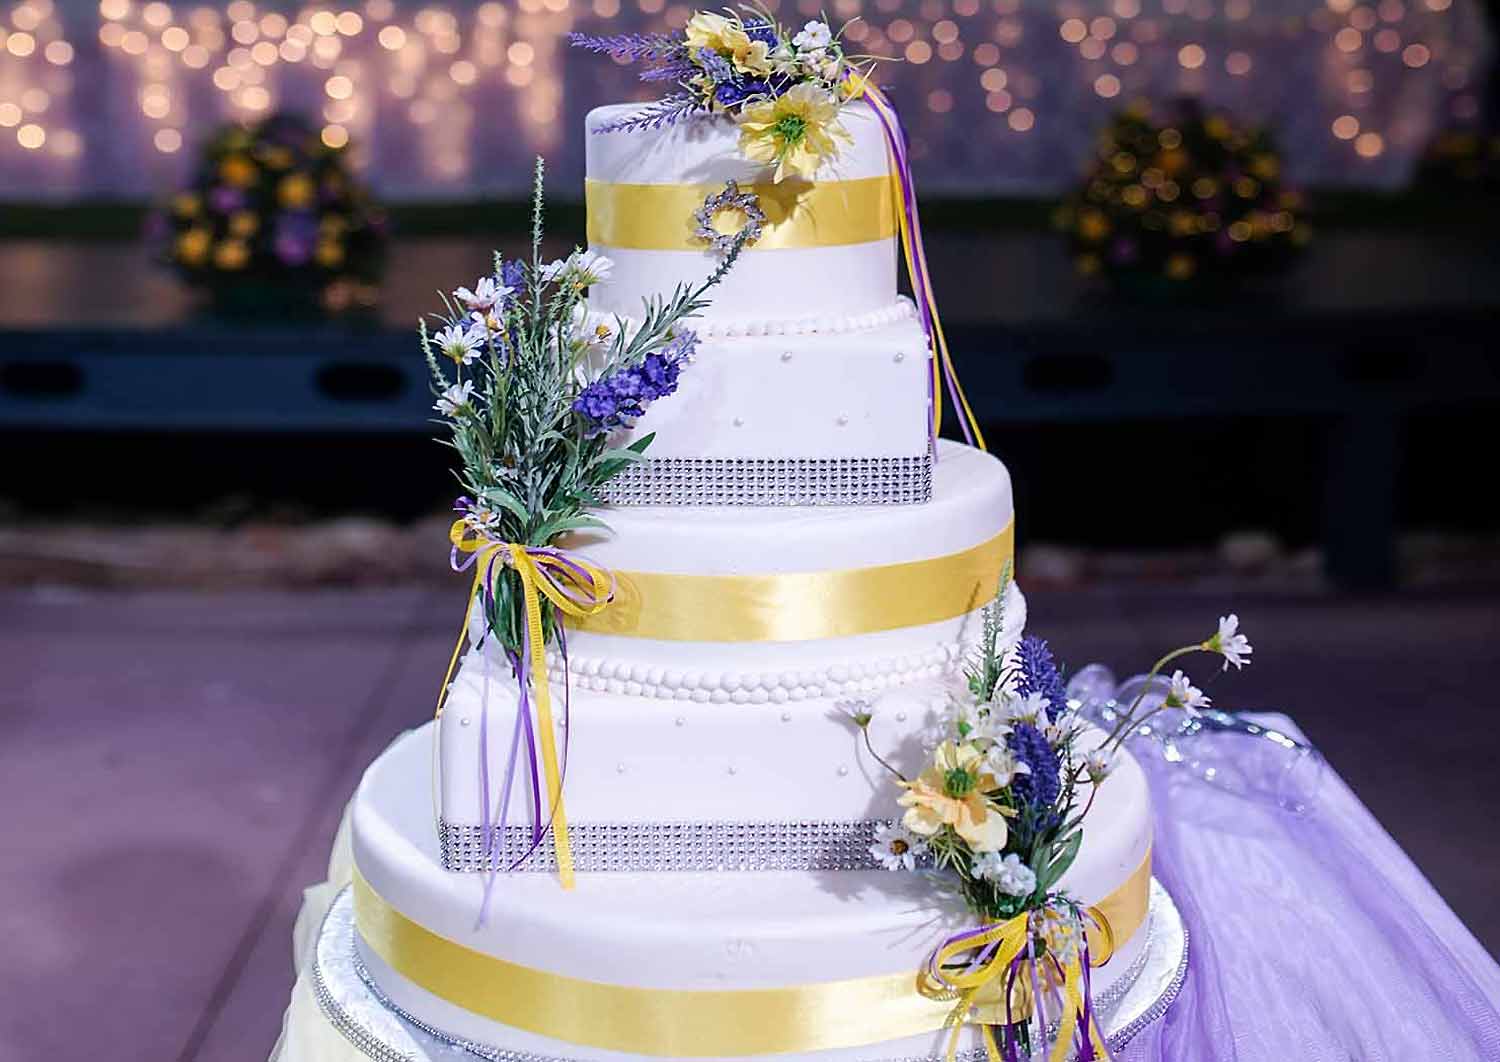 Lemon wedding cake designed by Anna Maria Rogdaki 1